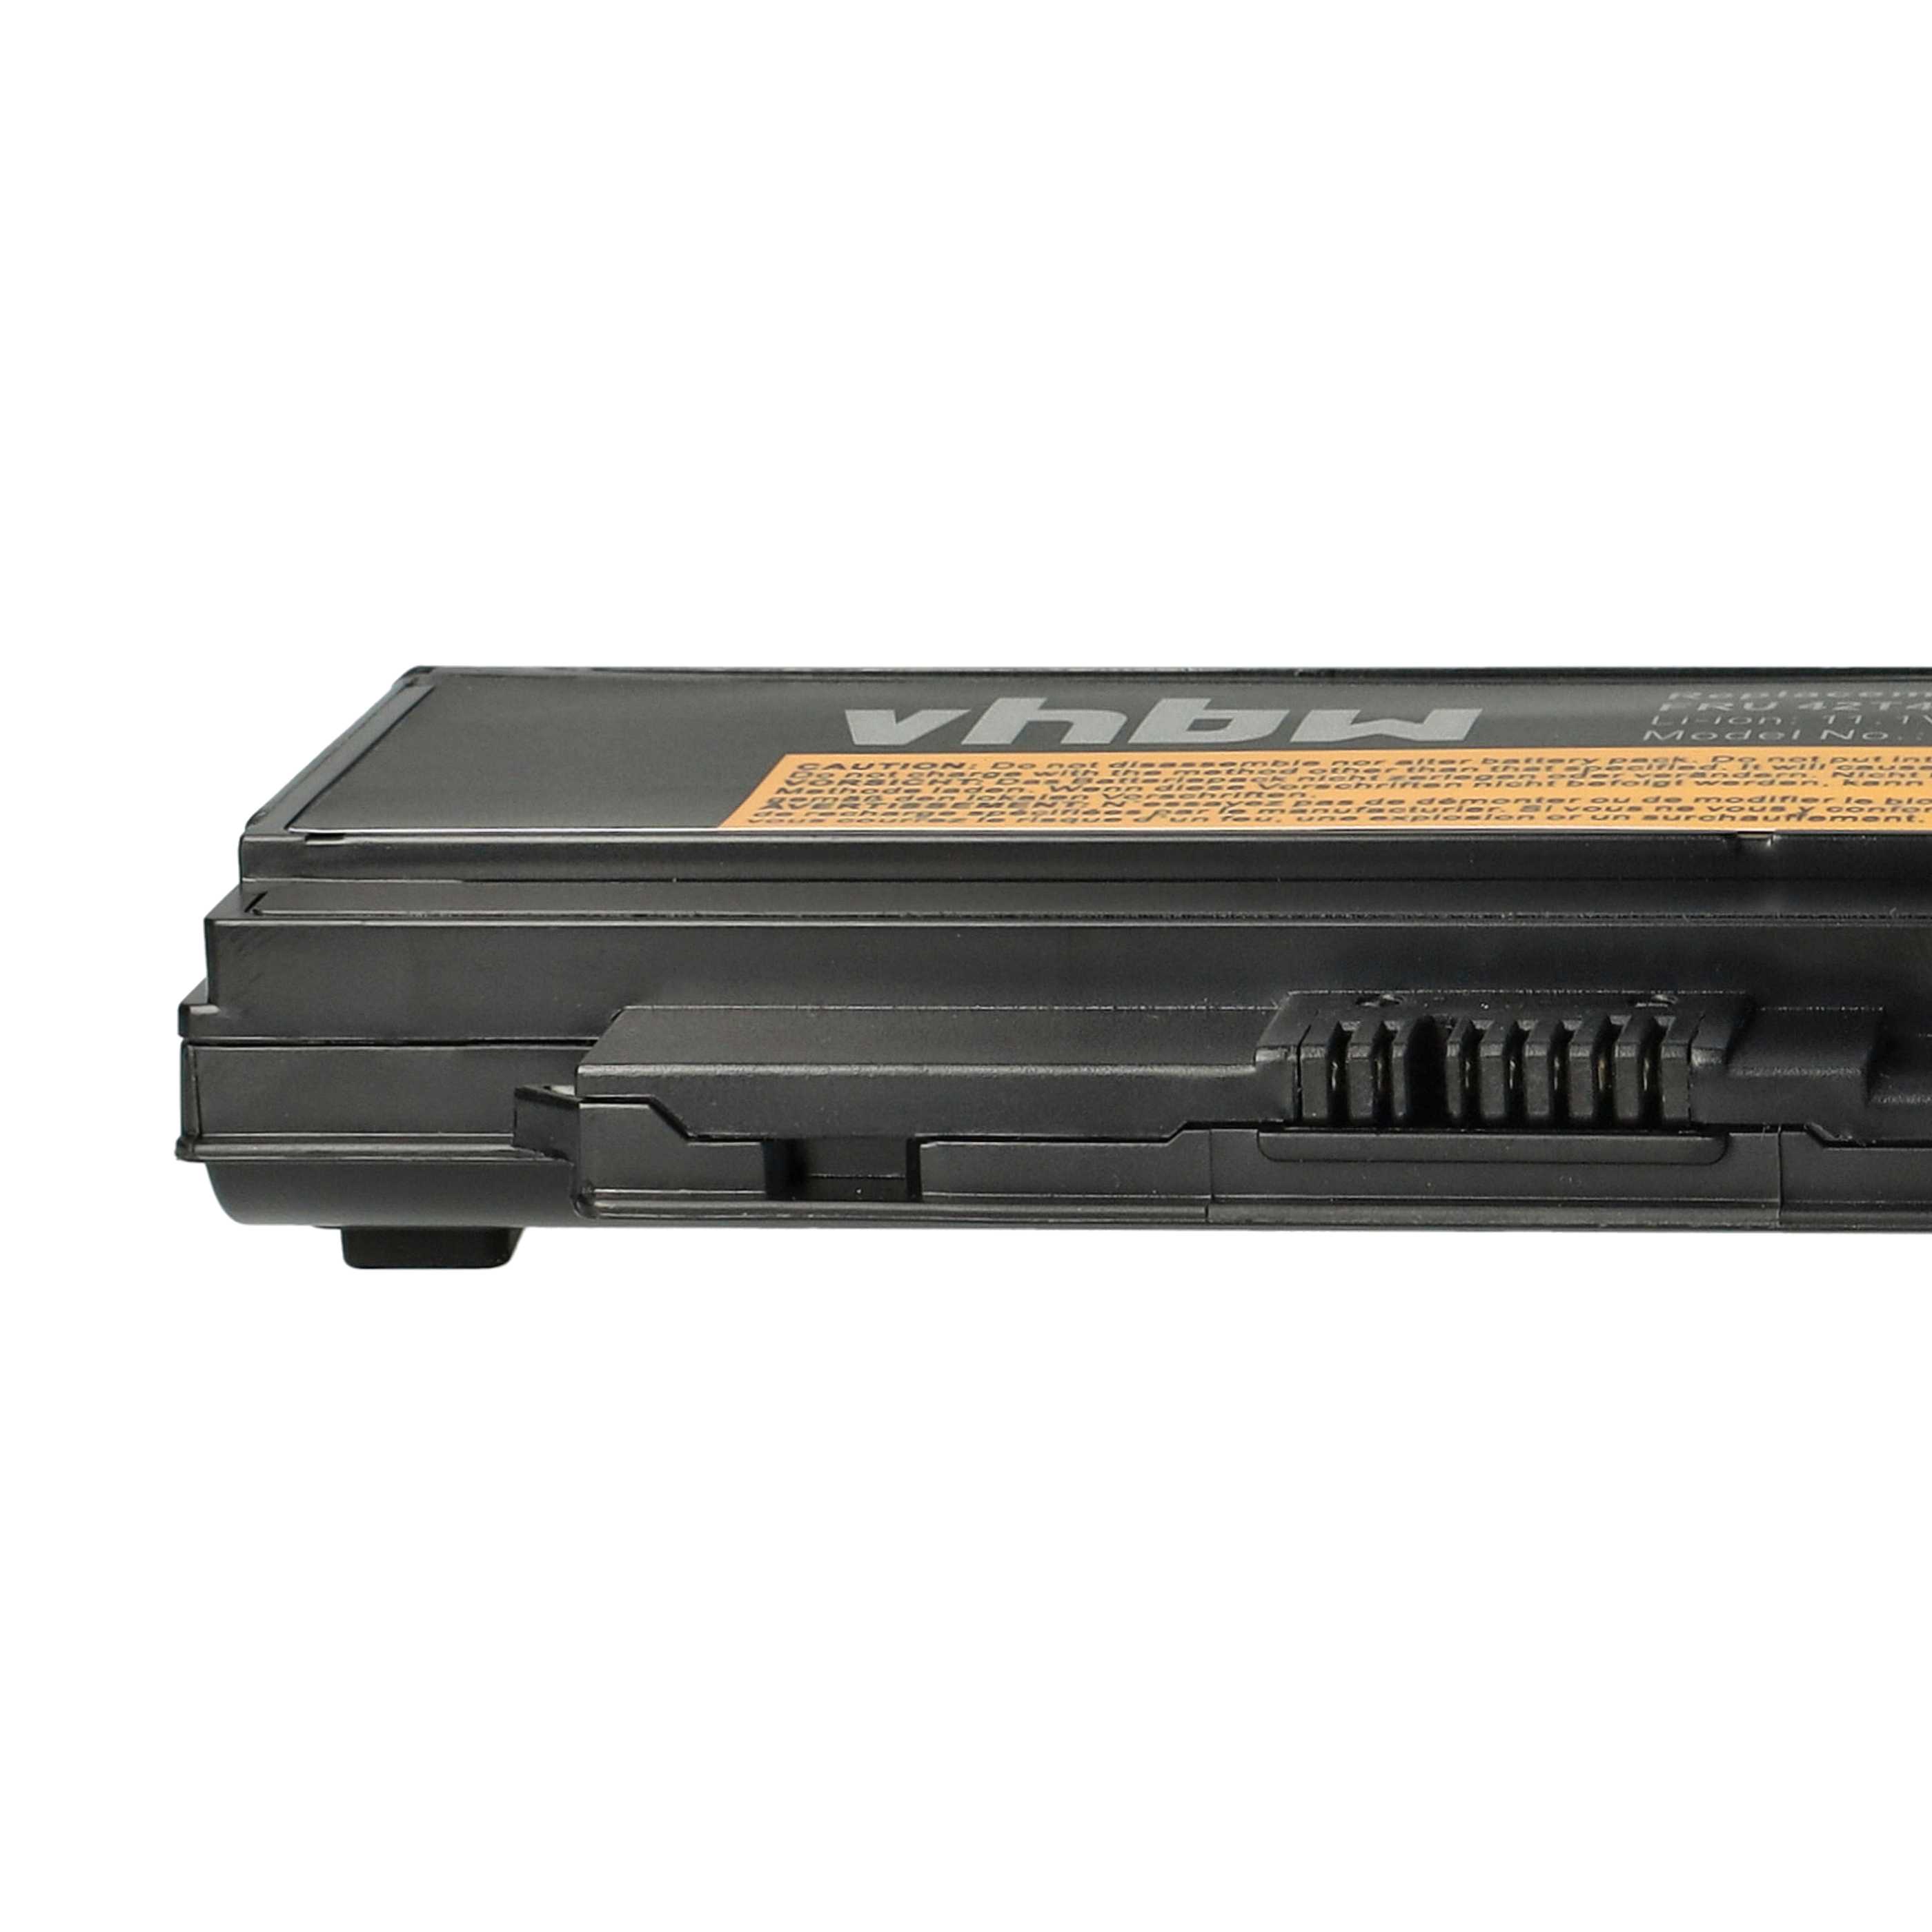 Batterie remplace Lenovo 0A36283, 0A36281, 0A36282 pour ordinateur portable - 4400mAh 11,1V Li-ion, noir